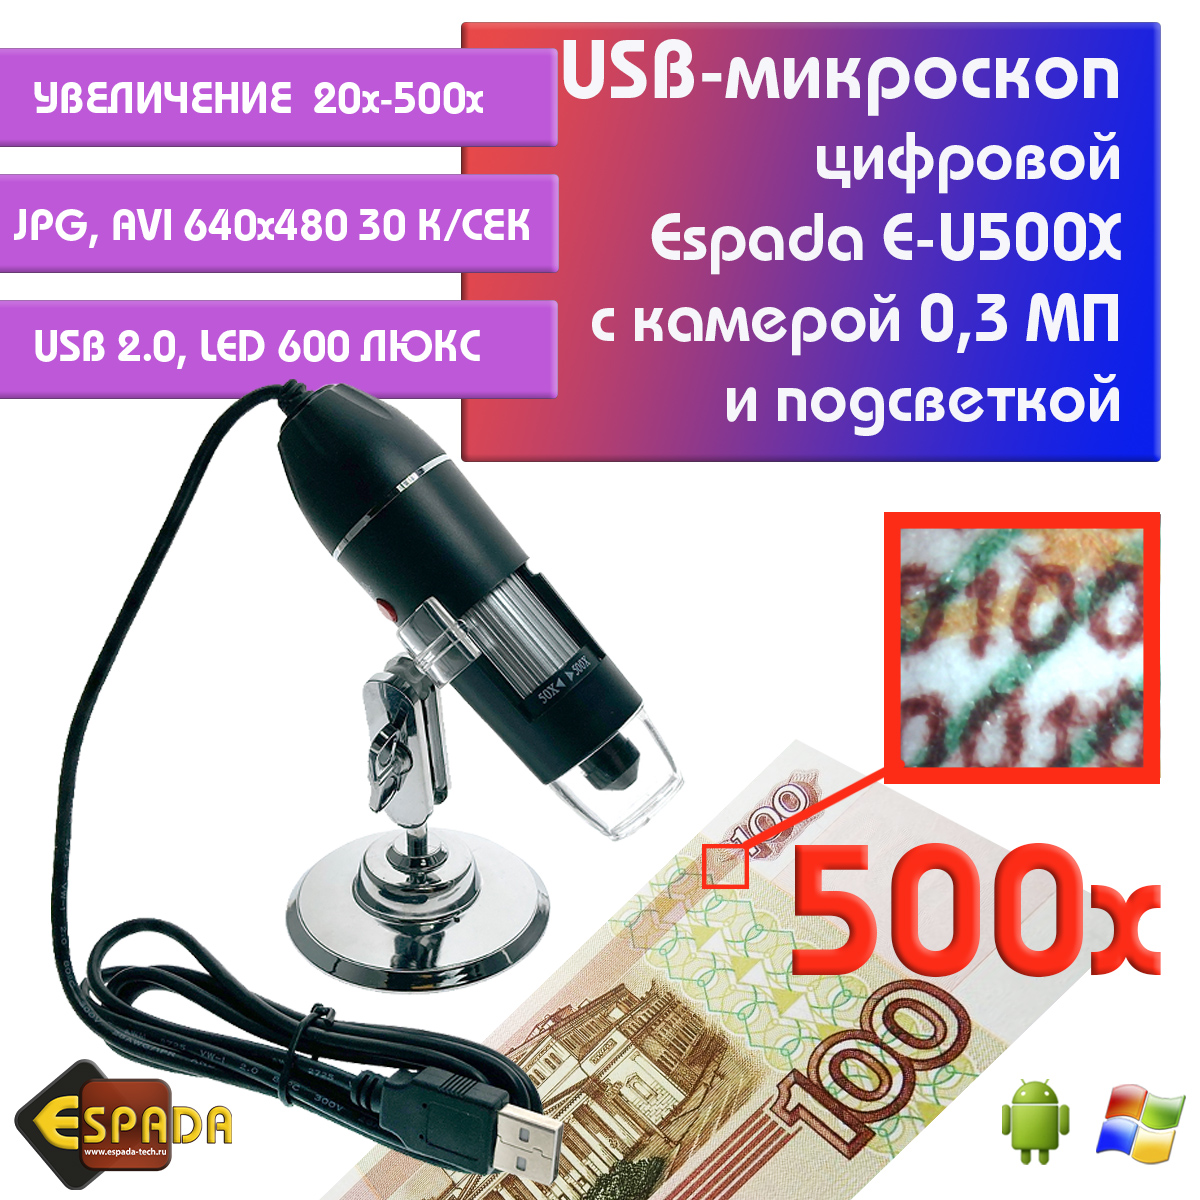 Портативный цифровой USB-микроскоп Espada E-U500X c камерой 0,3 МП и увеличением 500x видеокарта kfa2 pcie16 rtx3060ti 8g gddr6x 36ism6md1gsk